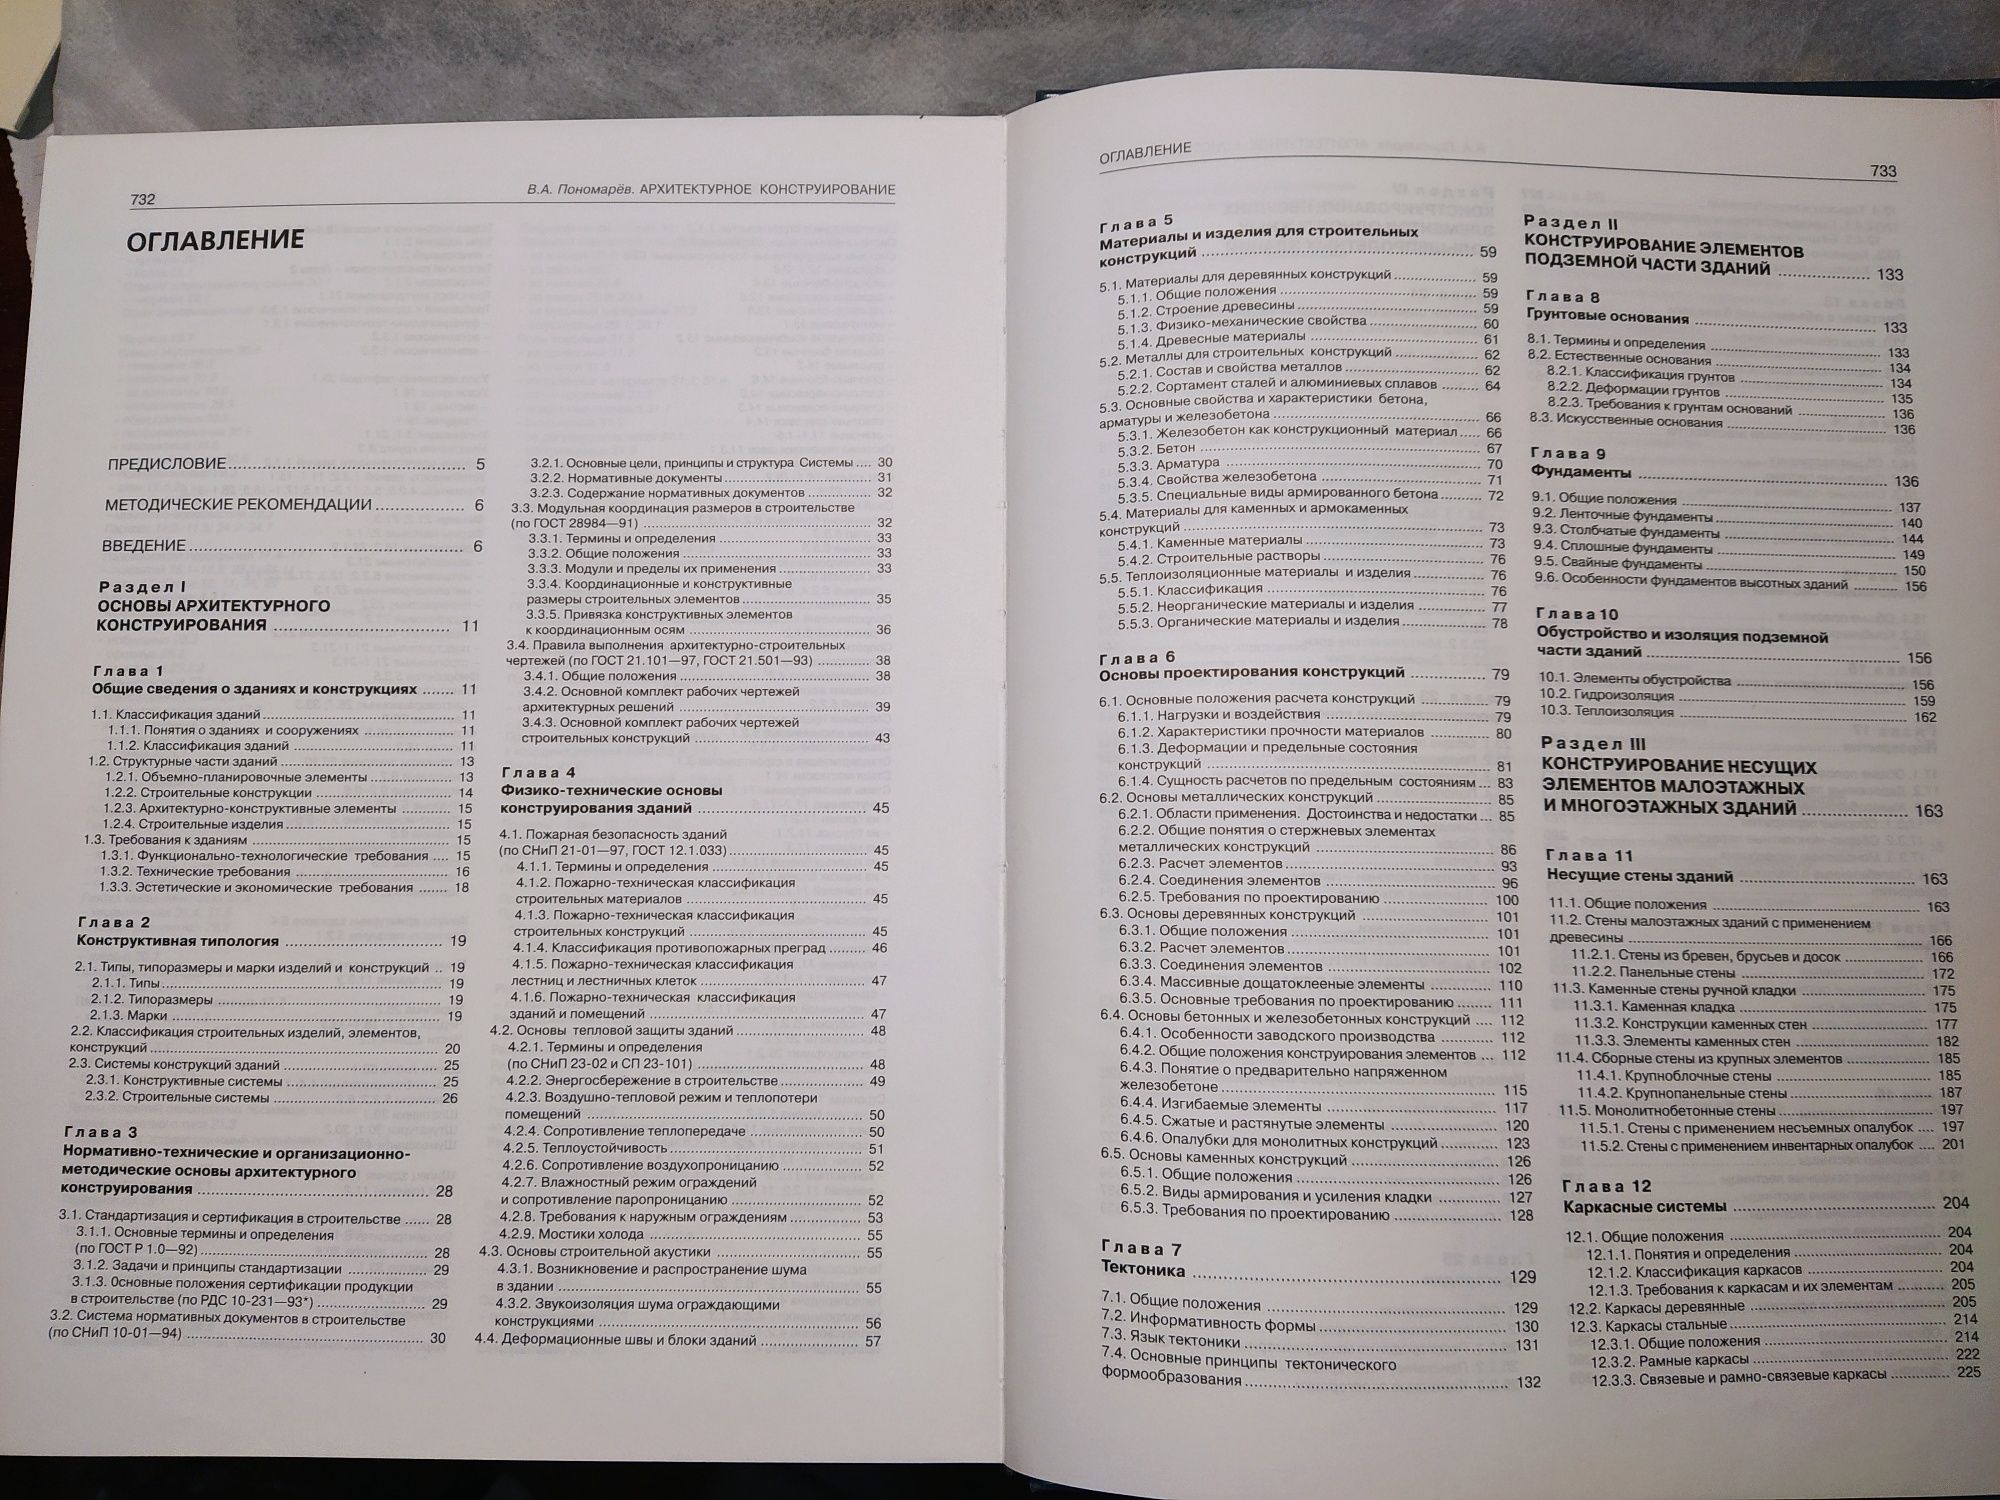 Учебник Архитектурное конструирование
Пономарев В.А. 736 стр.